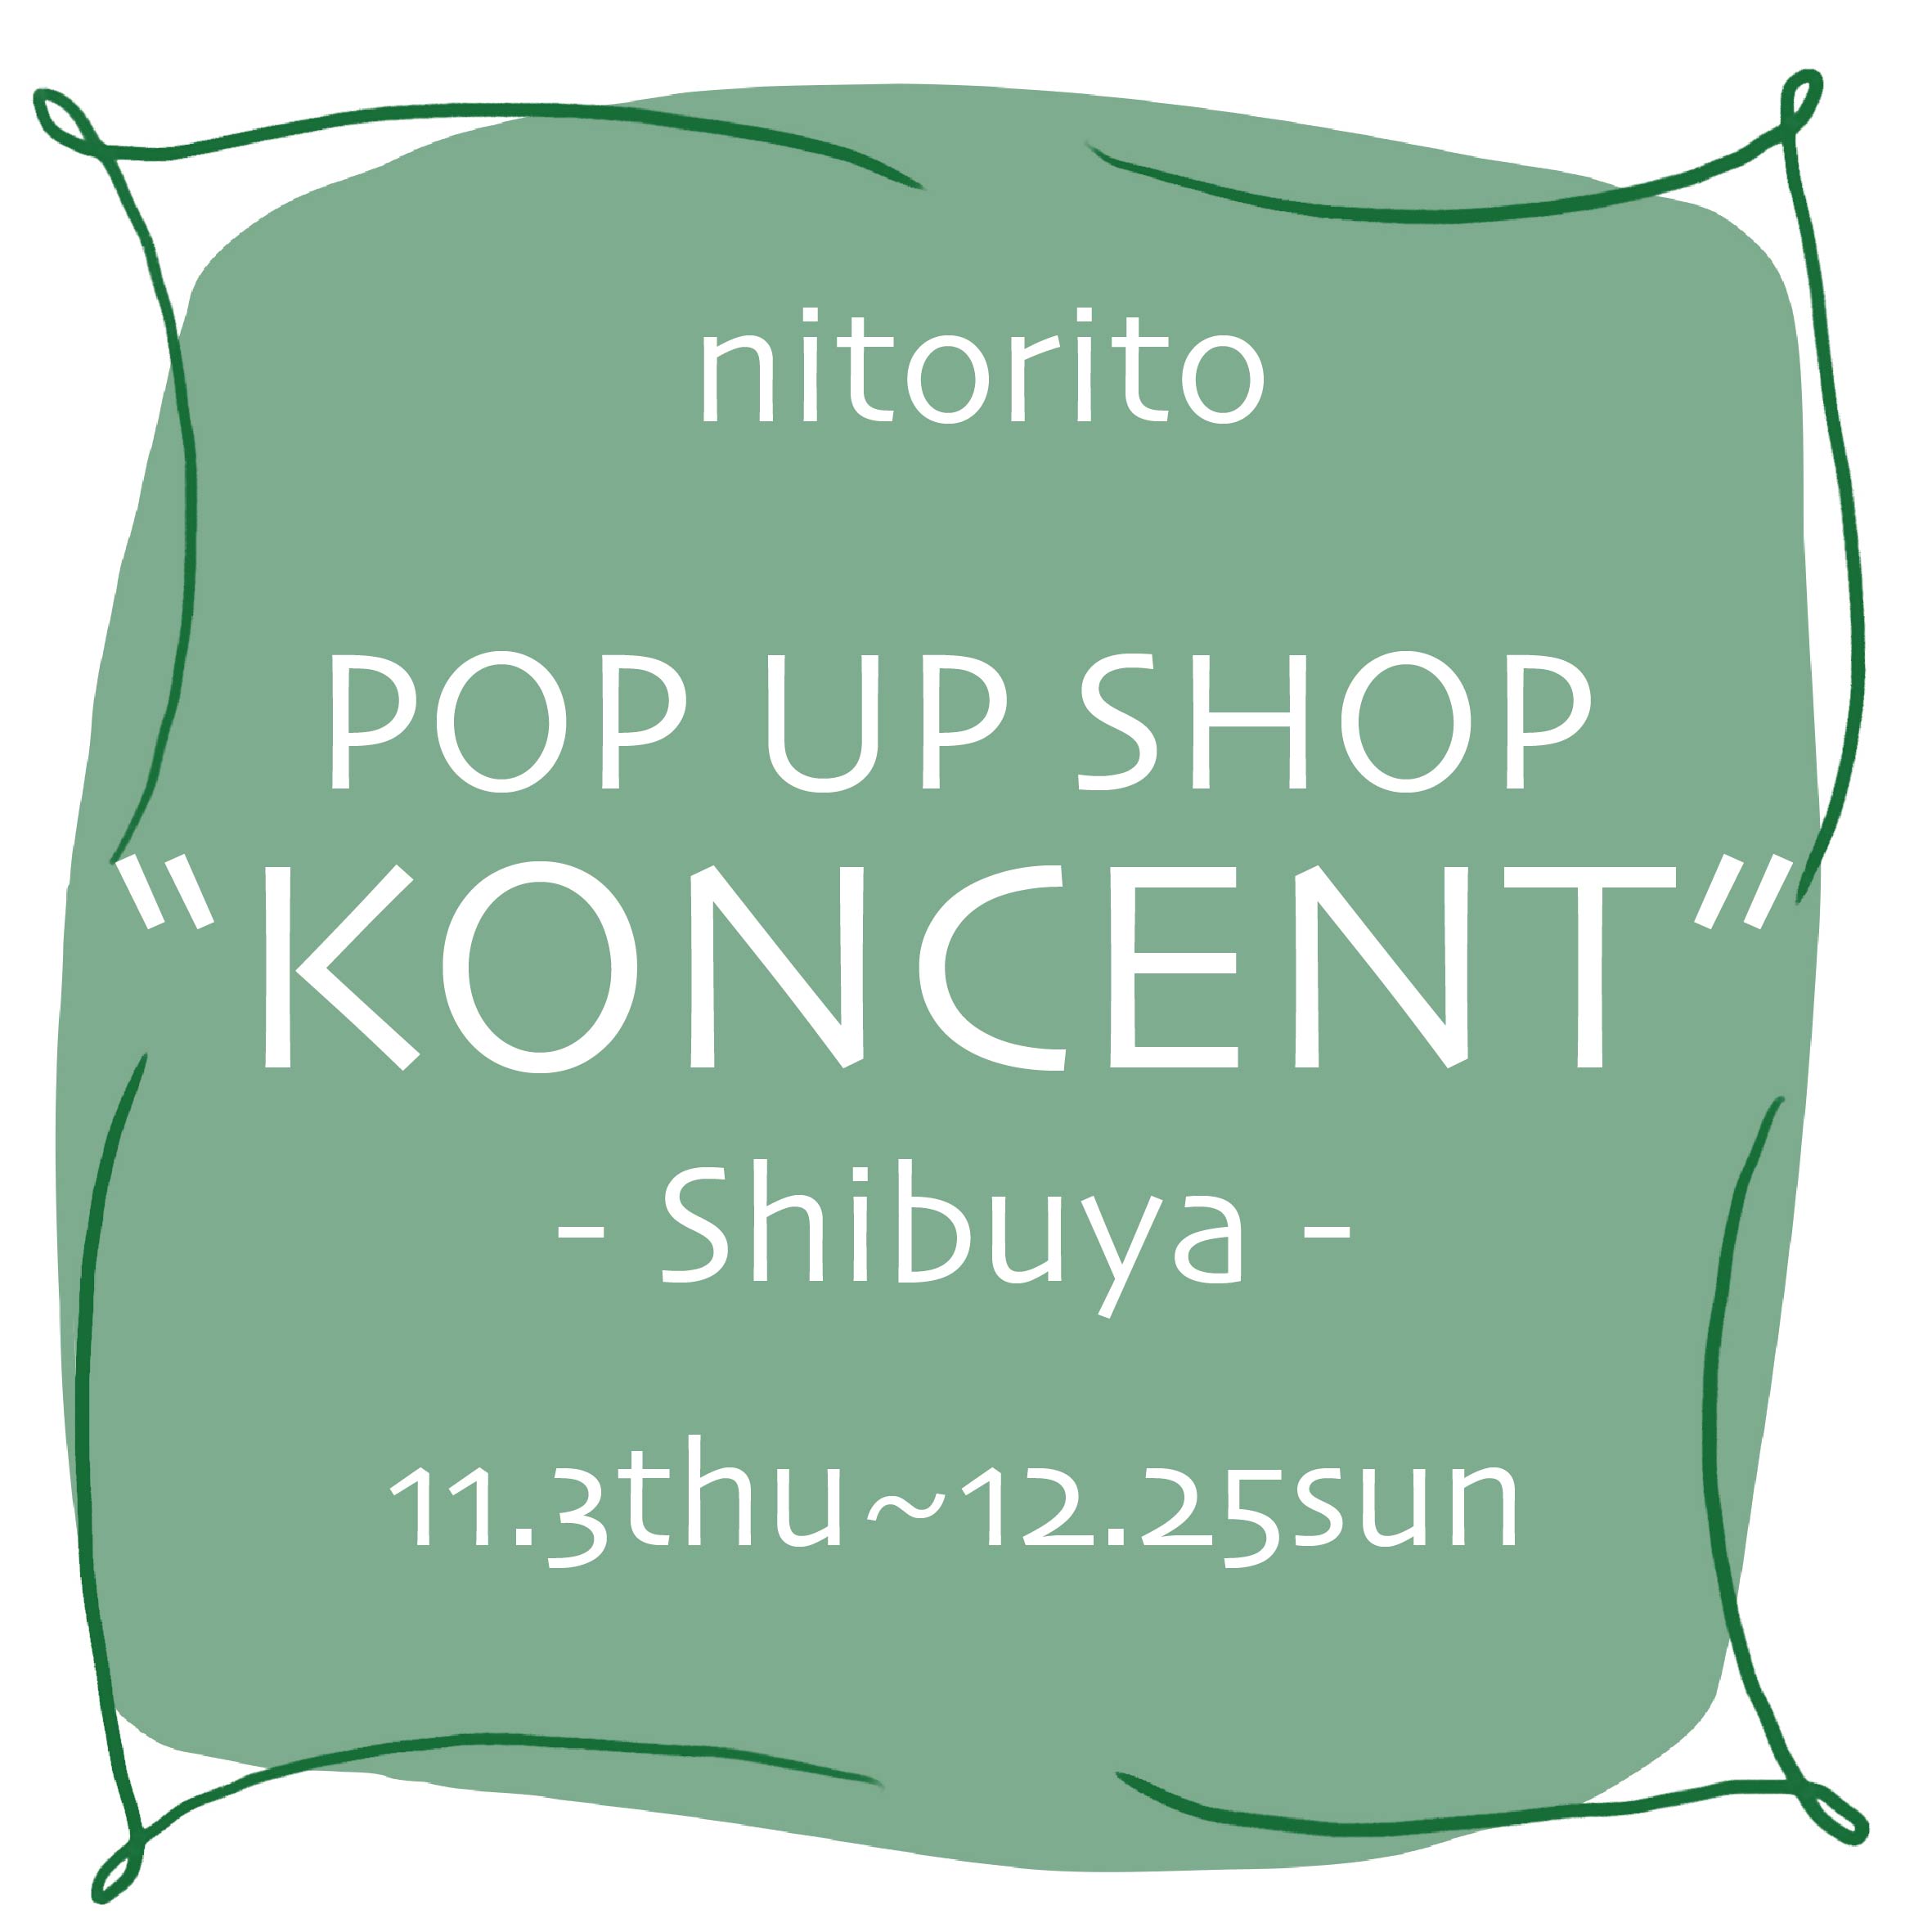 KONCENT渋谷店にてPOPUPSHOPを行います！